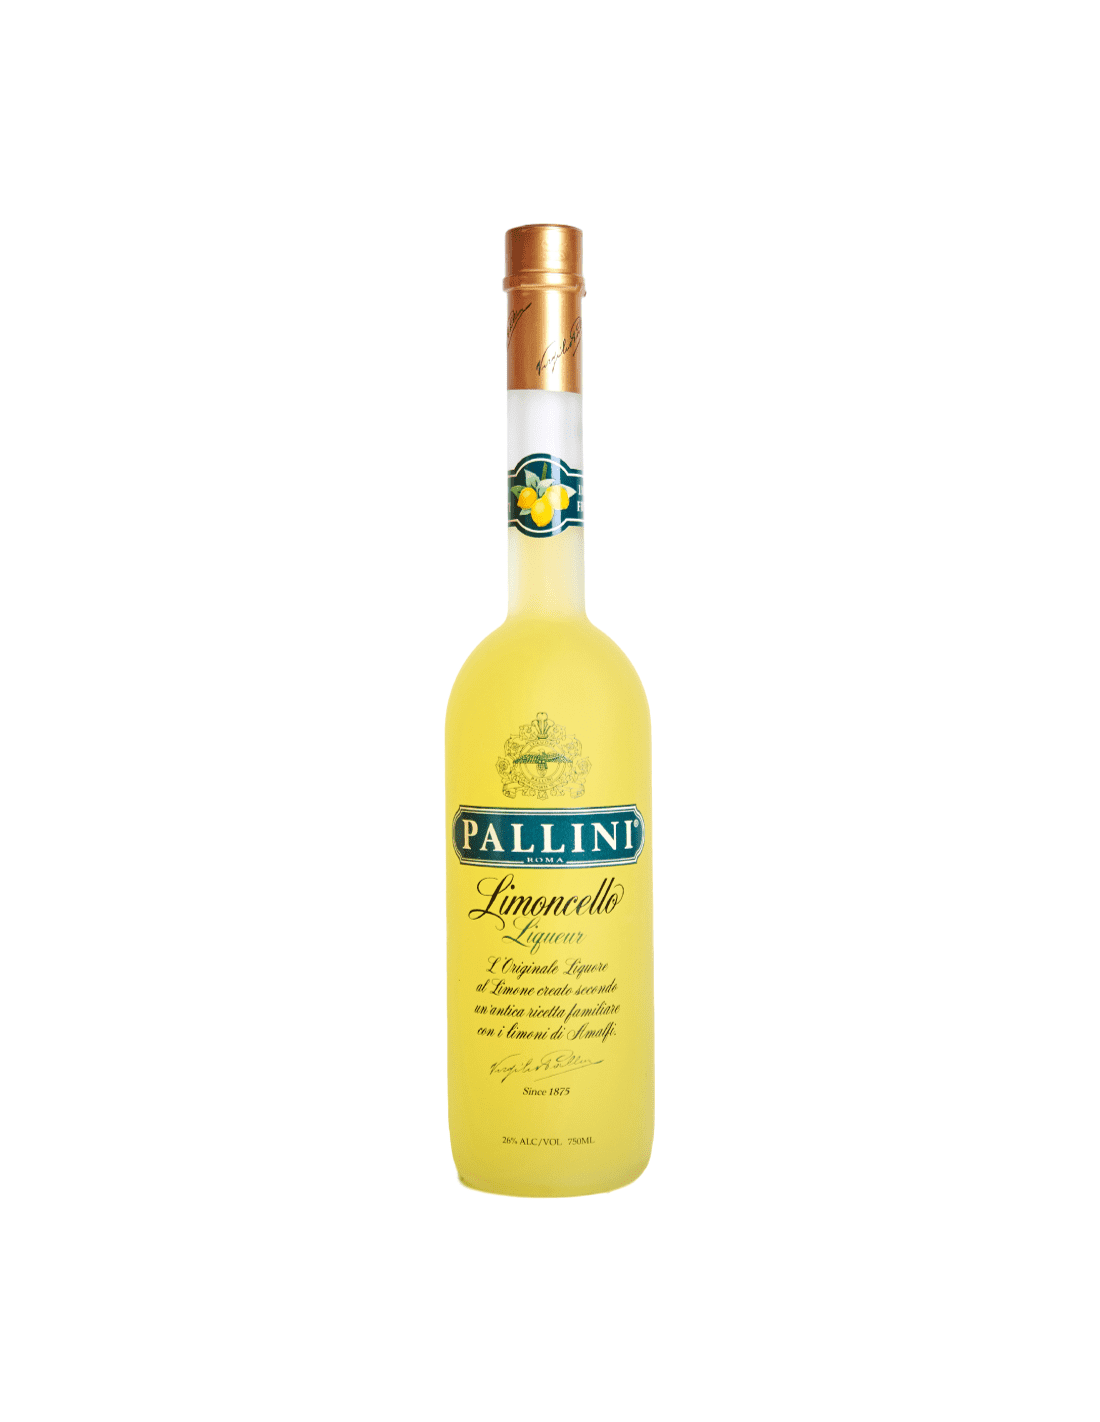 Lichior Pallini Limoncello 26% alc., 0.5L, Italia alcooldiscount.ro